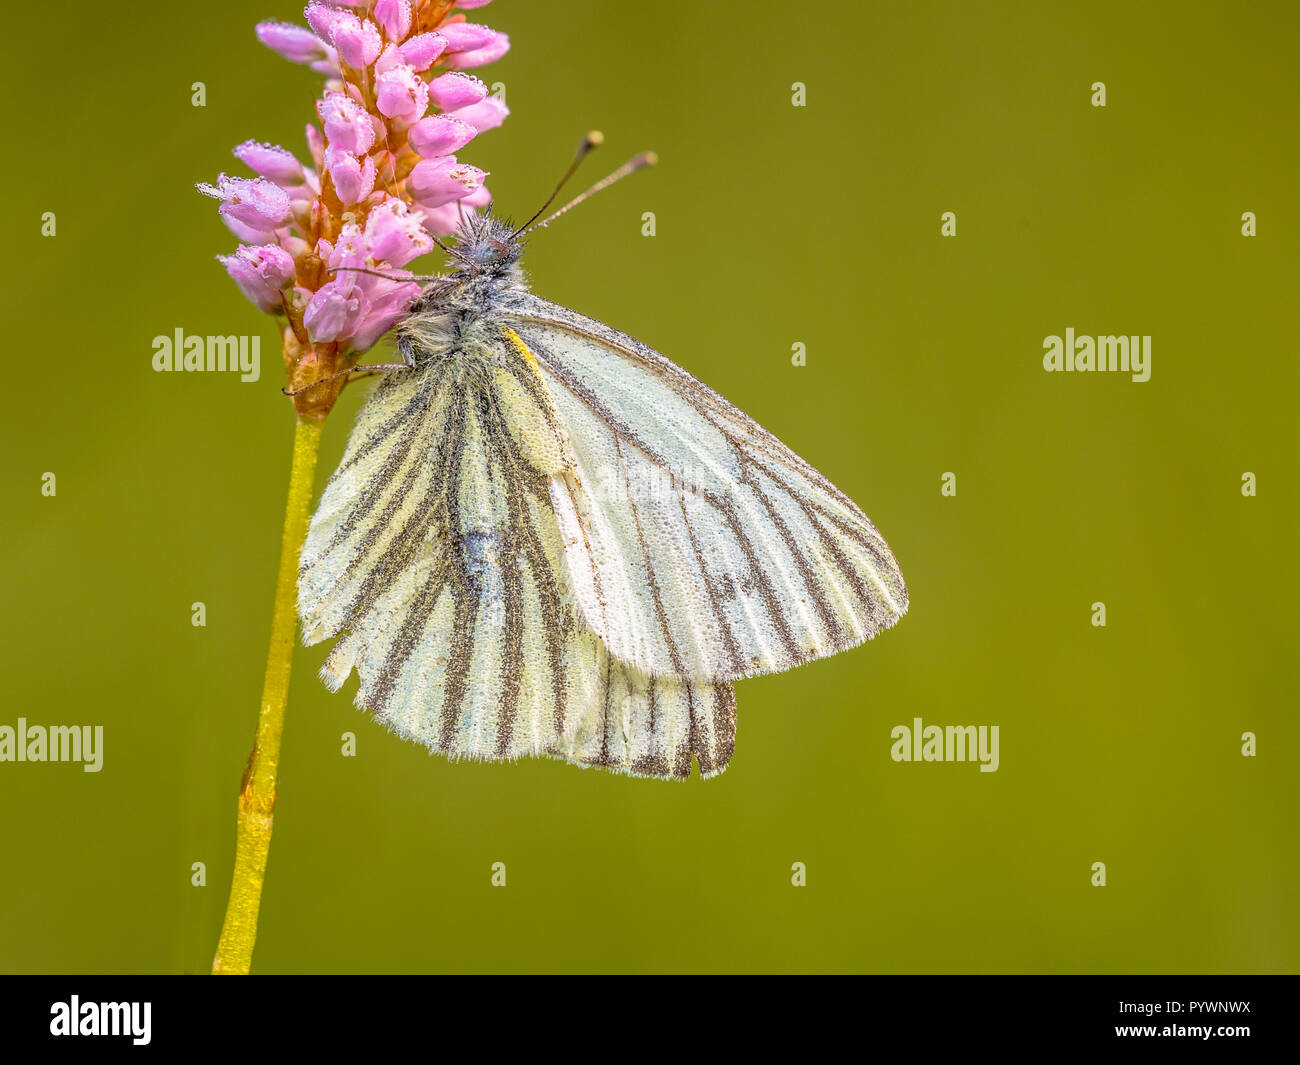 Dormir Green-Veined blanco (Pieris napi) cubierto de rocío. Esta es una de las mariposas más comunes en Europa. Foto de stock